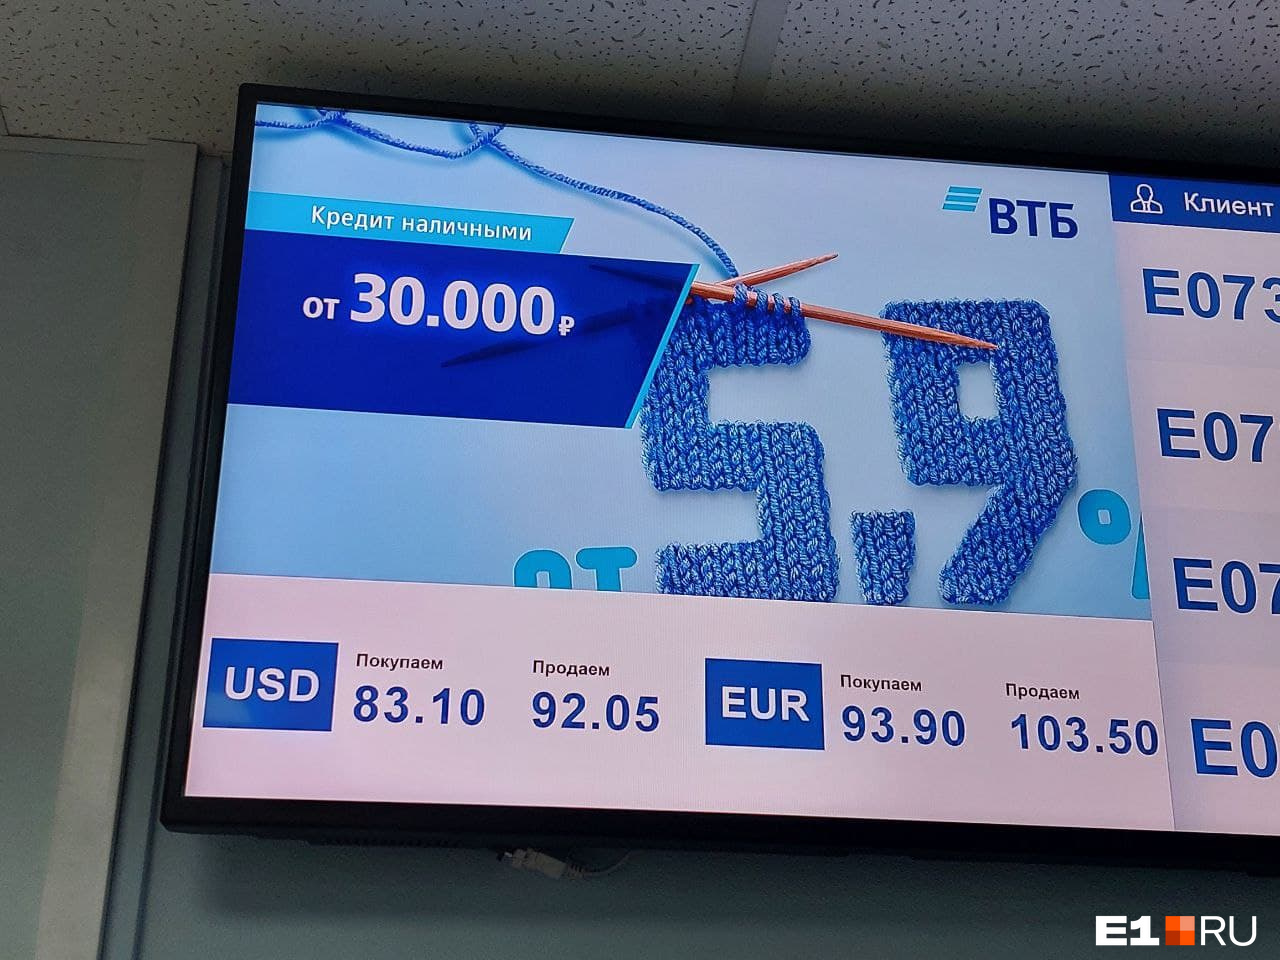 Евро покупают в банке ВТБ по 93,9 рубля 